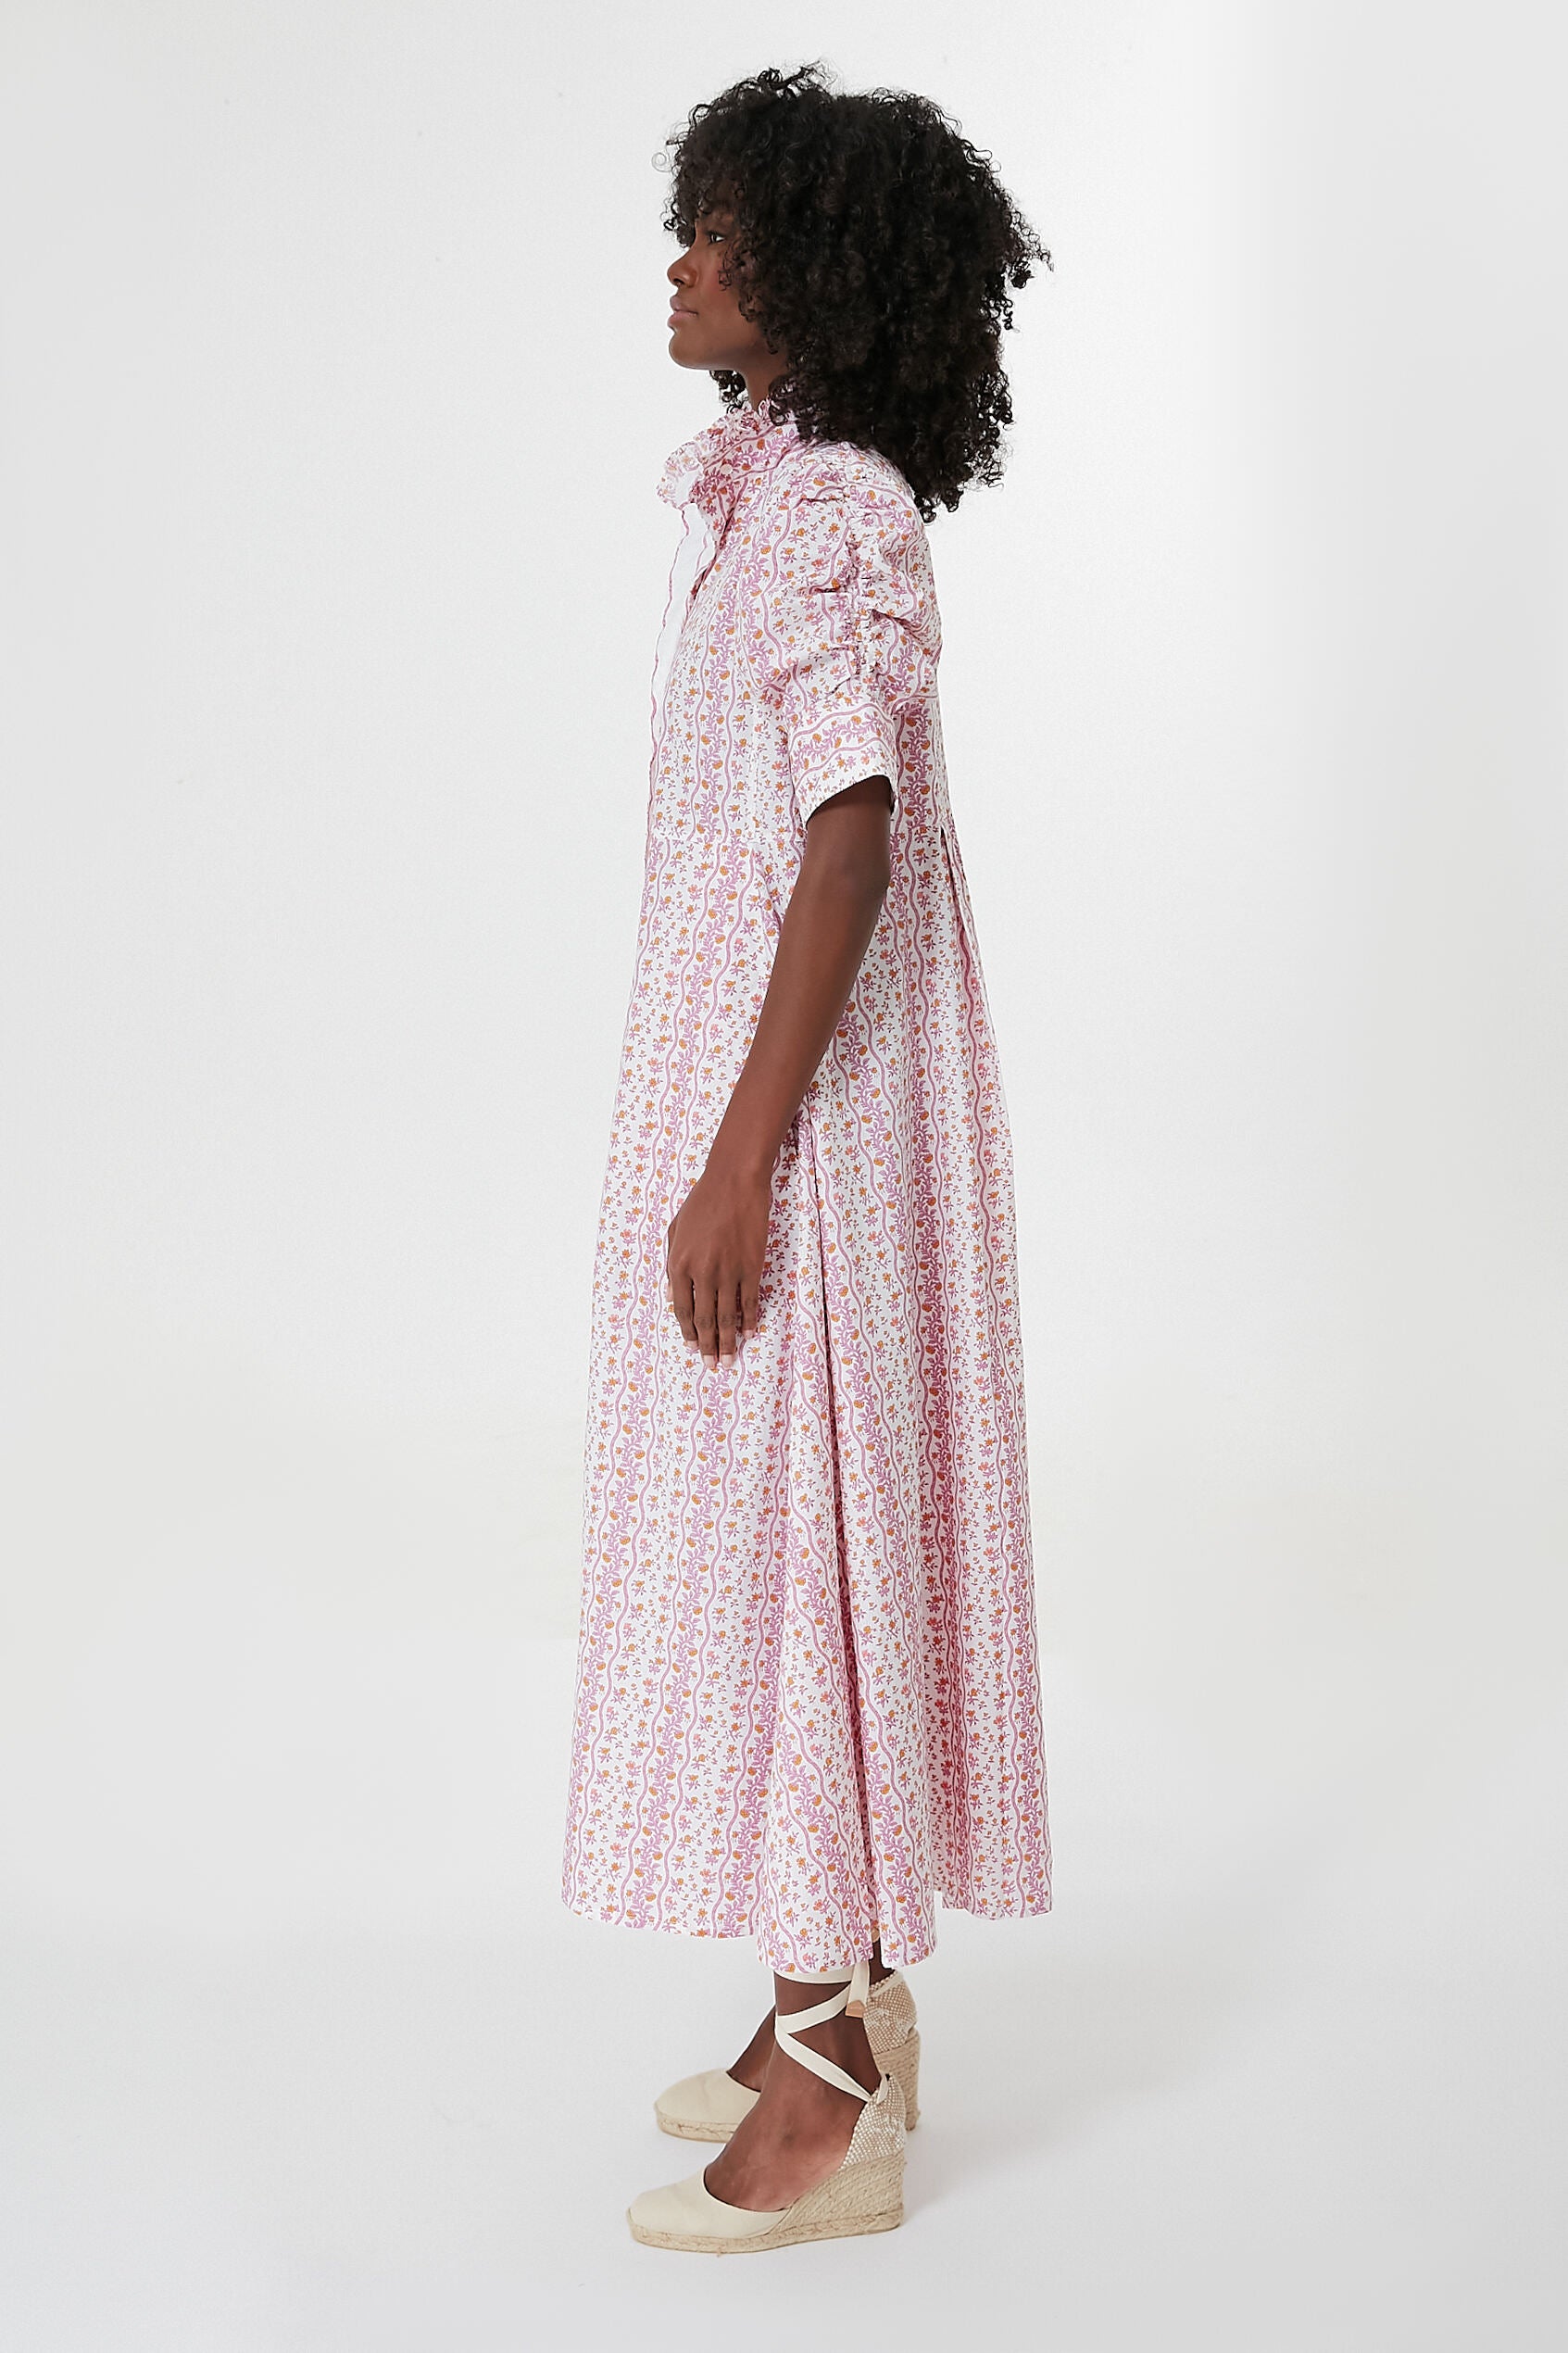 Lauren Conrad Polka-Dot Shirt and Pink Balenciaga Bag